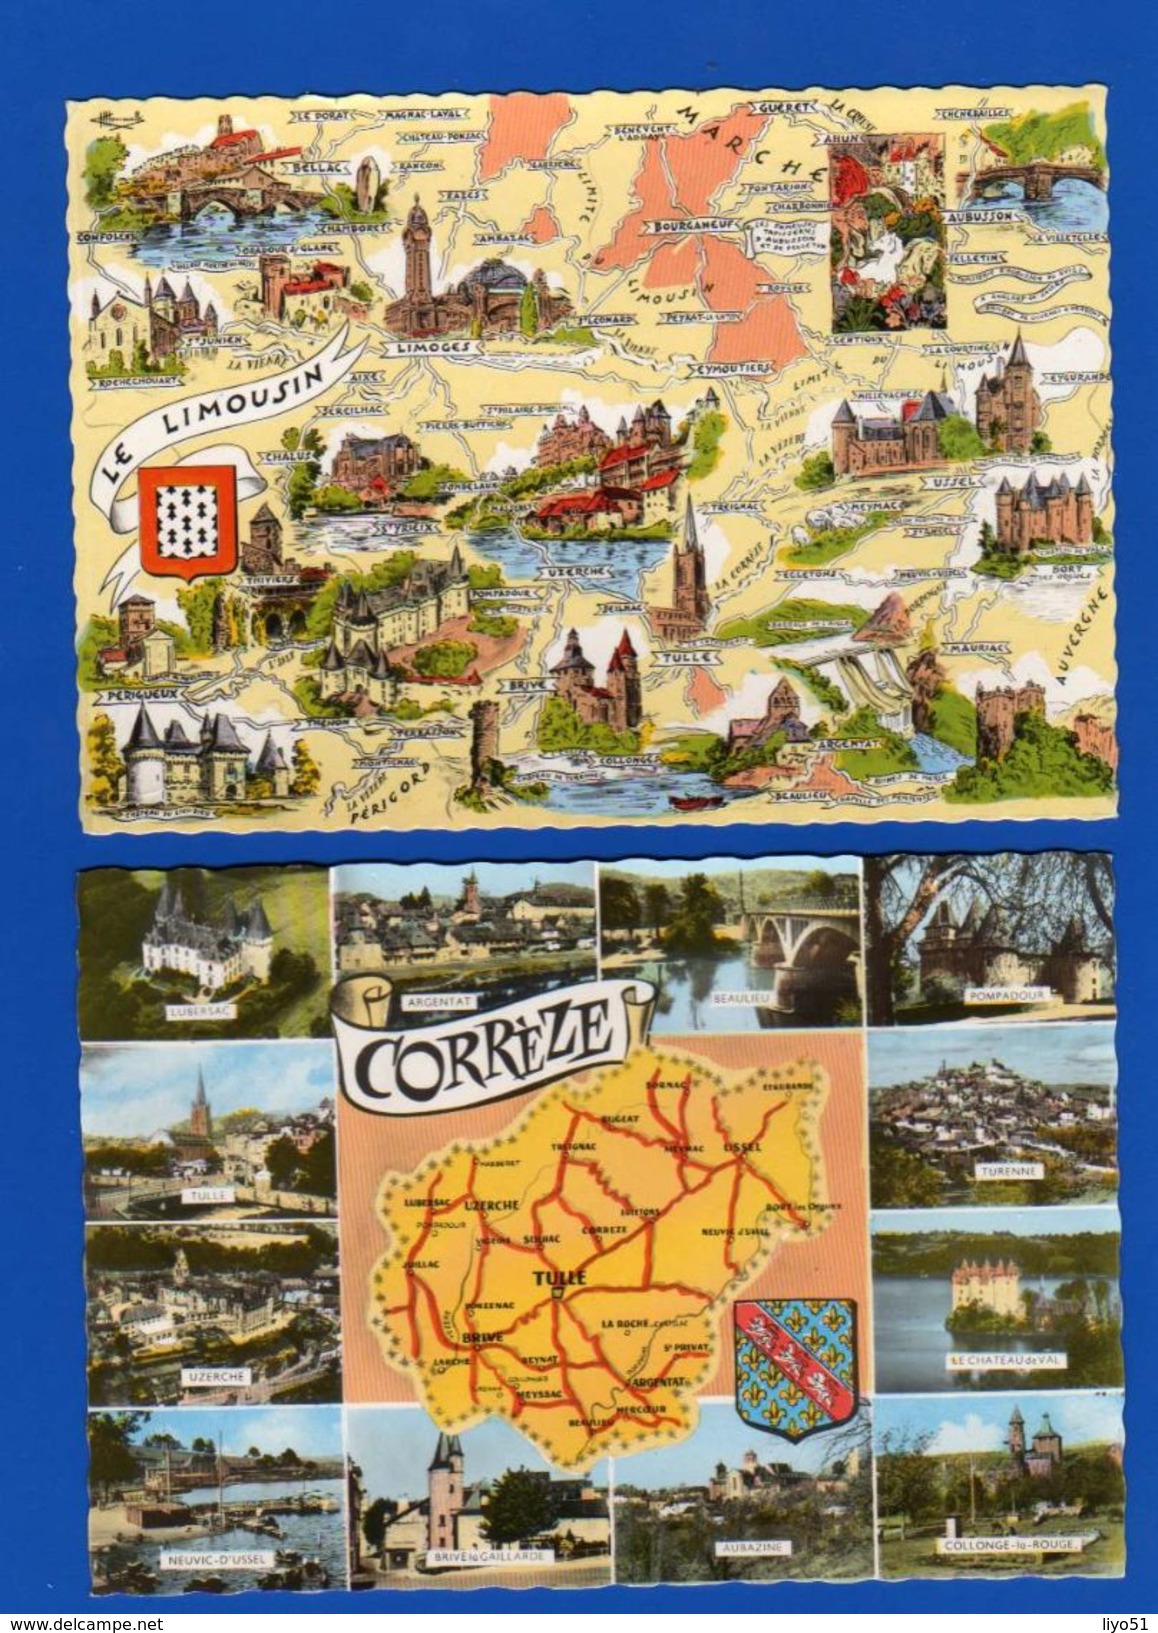 lot de 52 cartes postales fantaisies : thème départements cartes et régions . Toutes scannées .quelques rousseurs